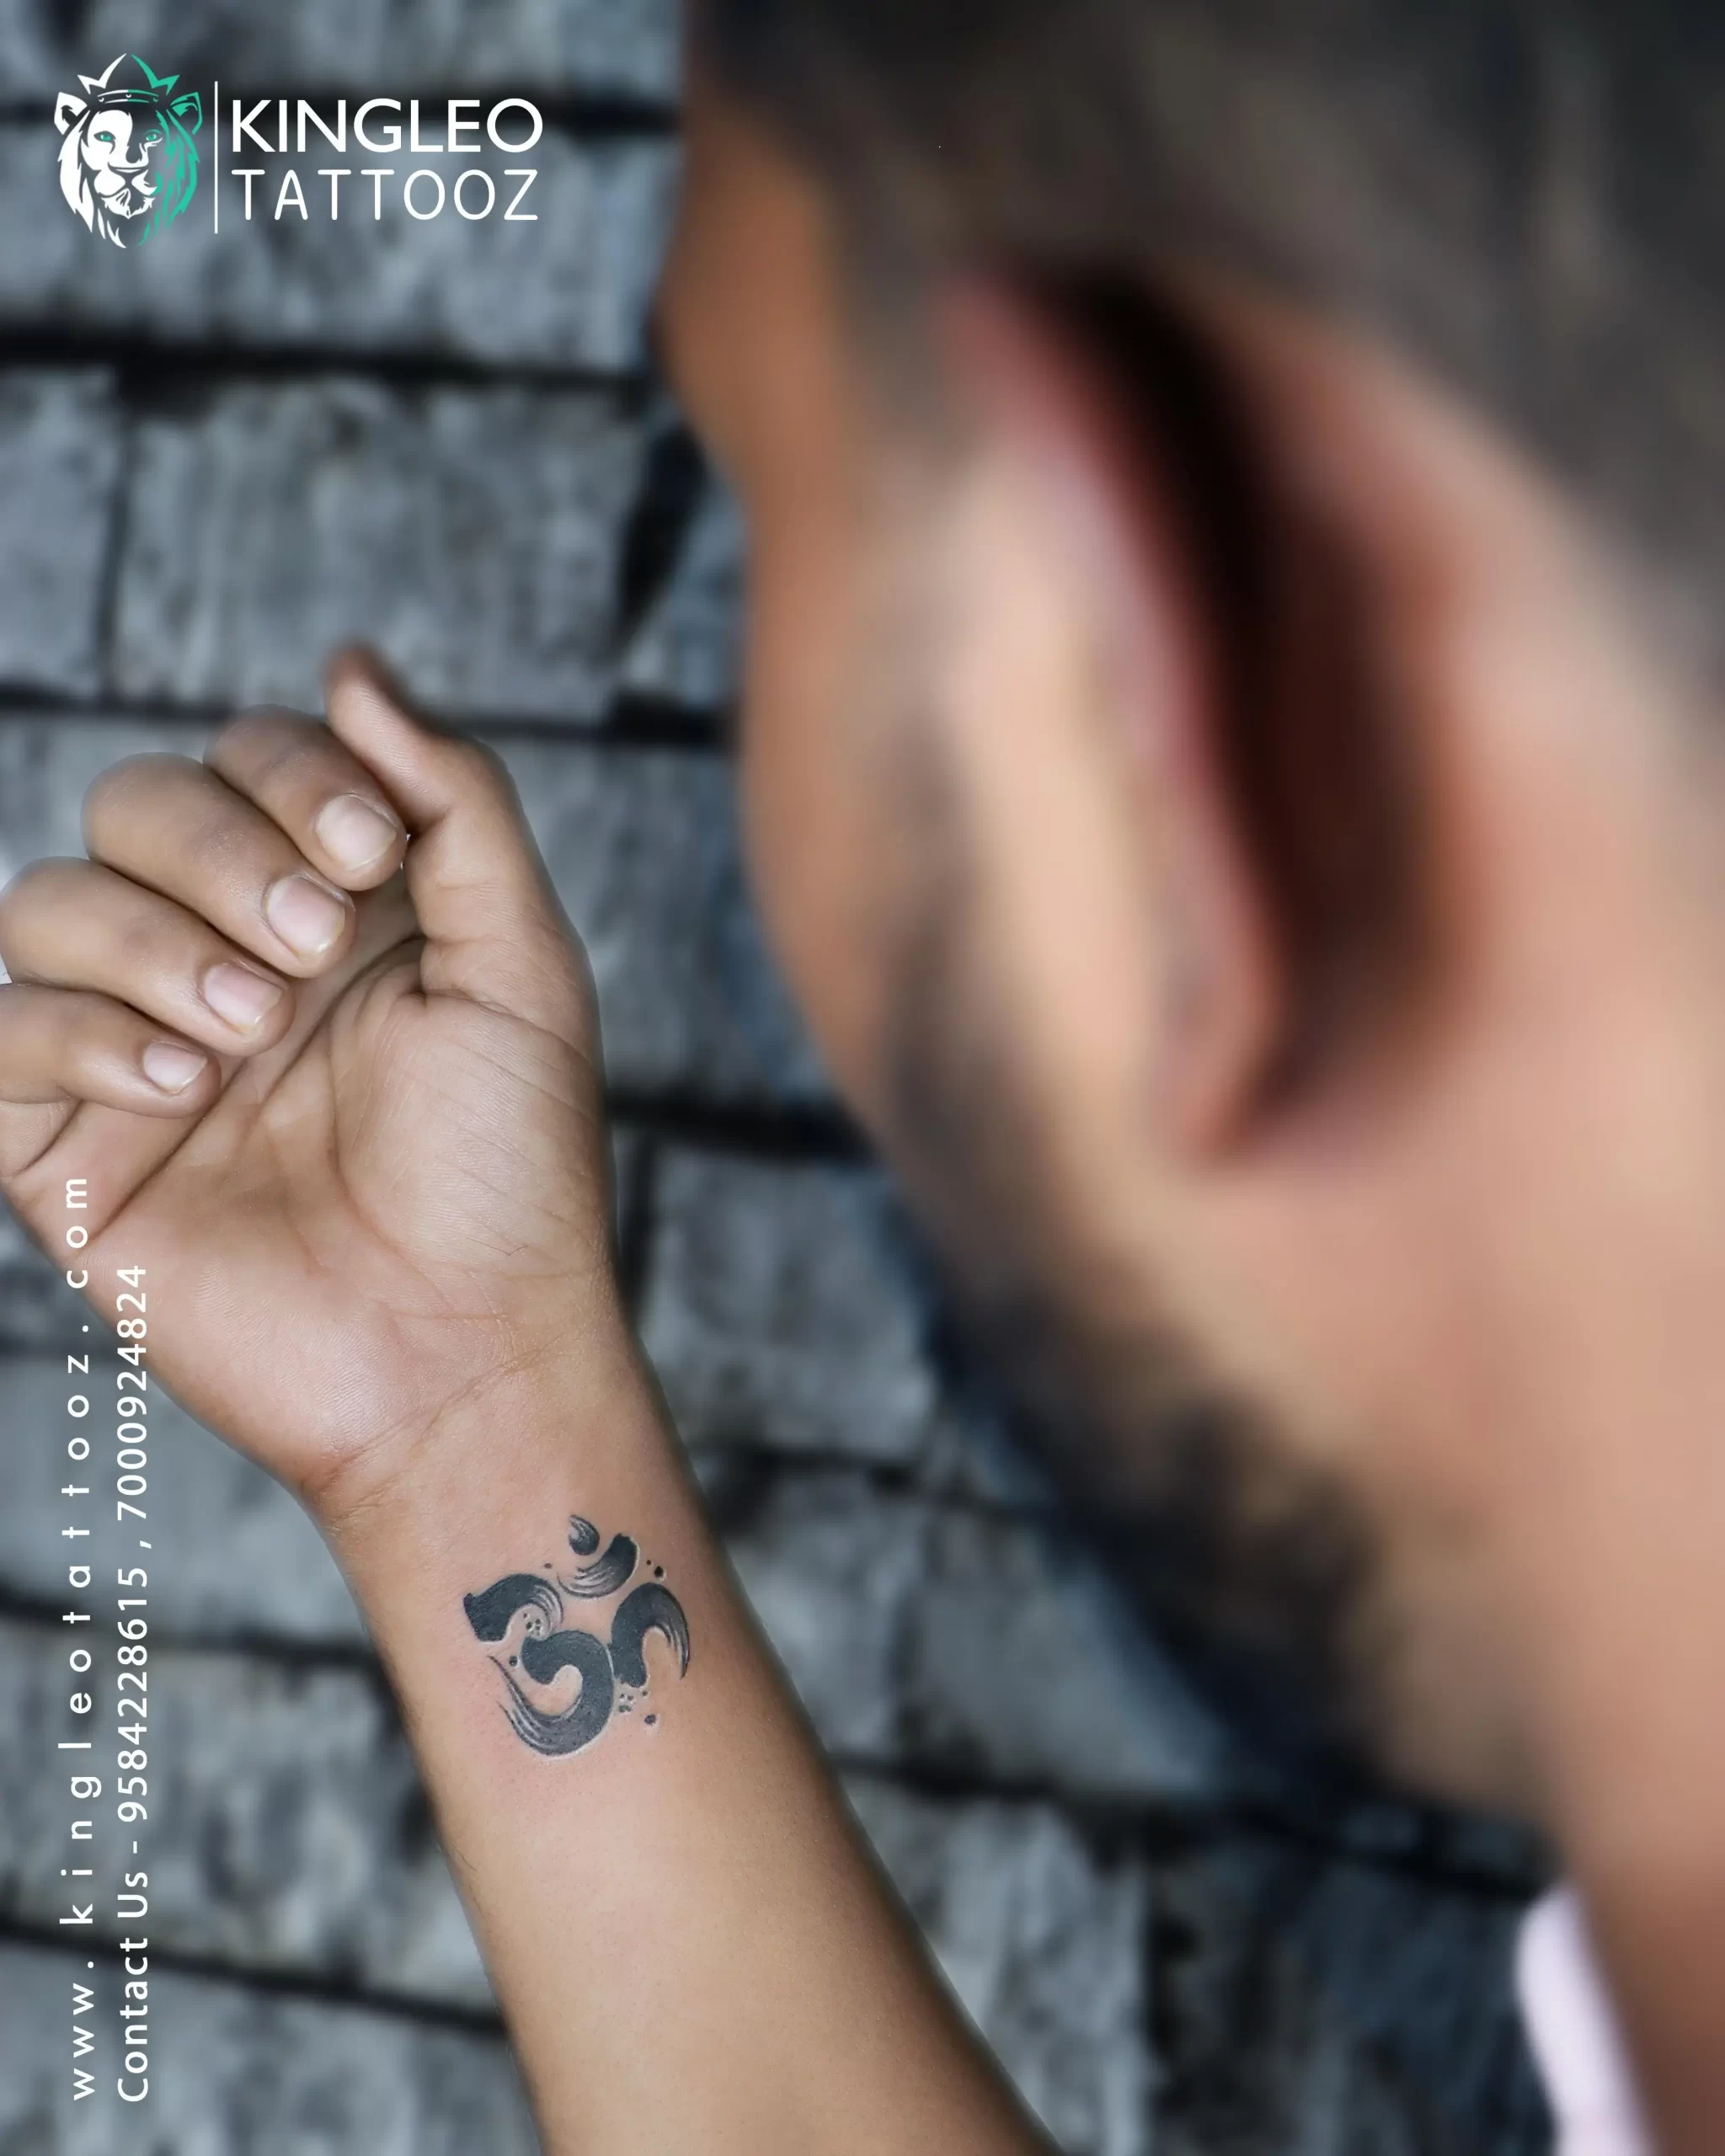 Spiritual Lord Shiva tattoo | Tattoo Ink Master